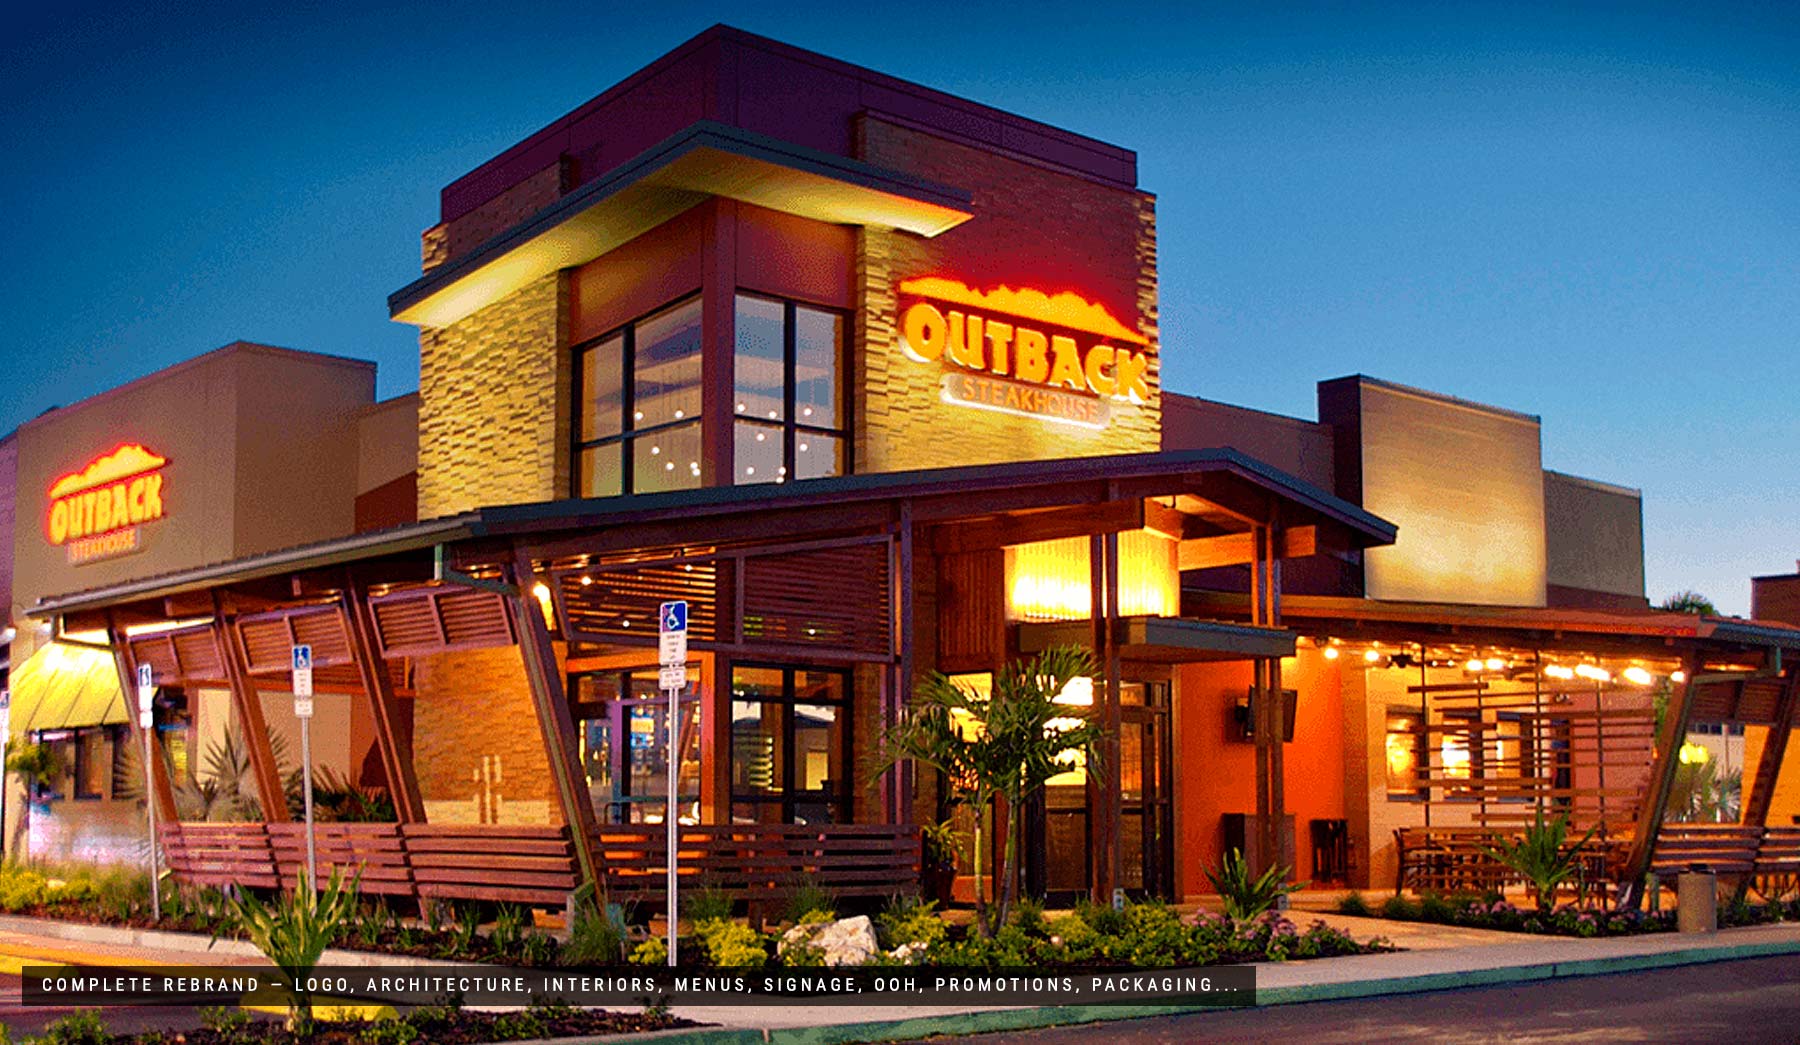 outback steakhouse, rebranding, design, interior design, rebranding, frederic terral,